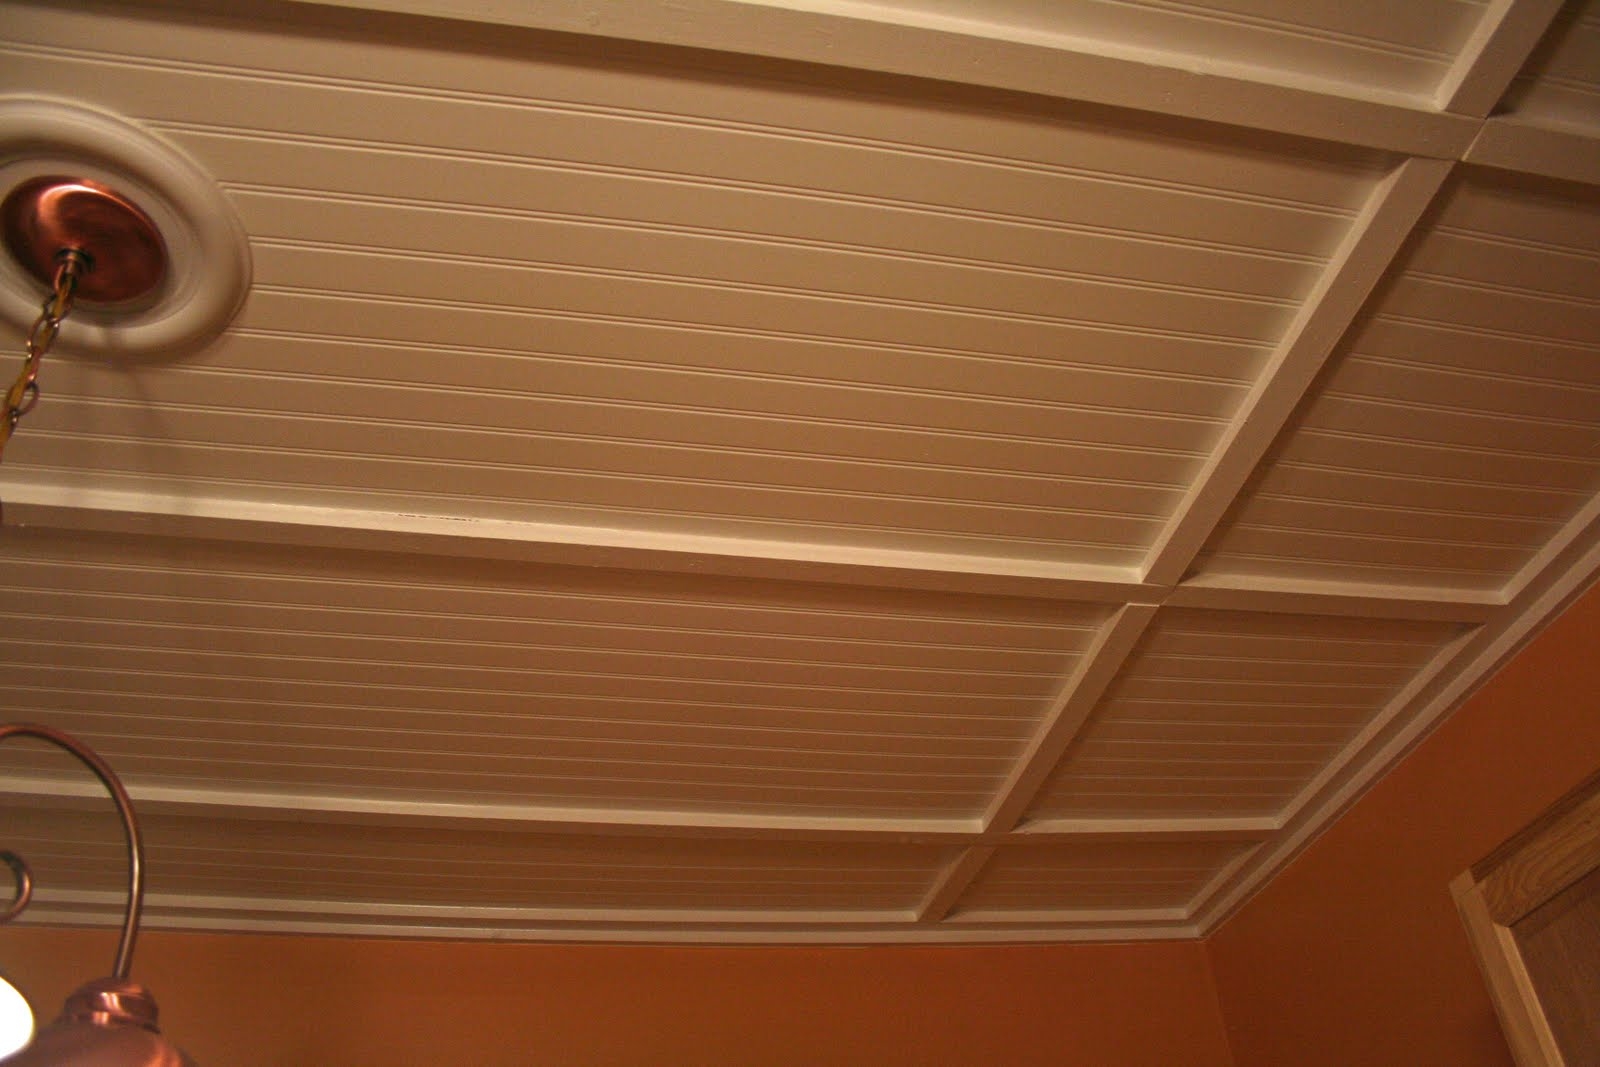 Permalink to Ceiling Tiles Look Like Wood